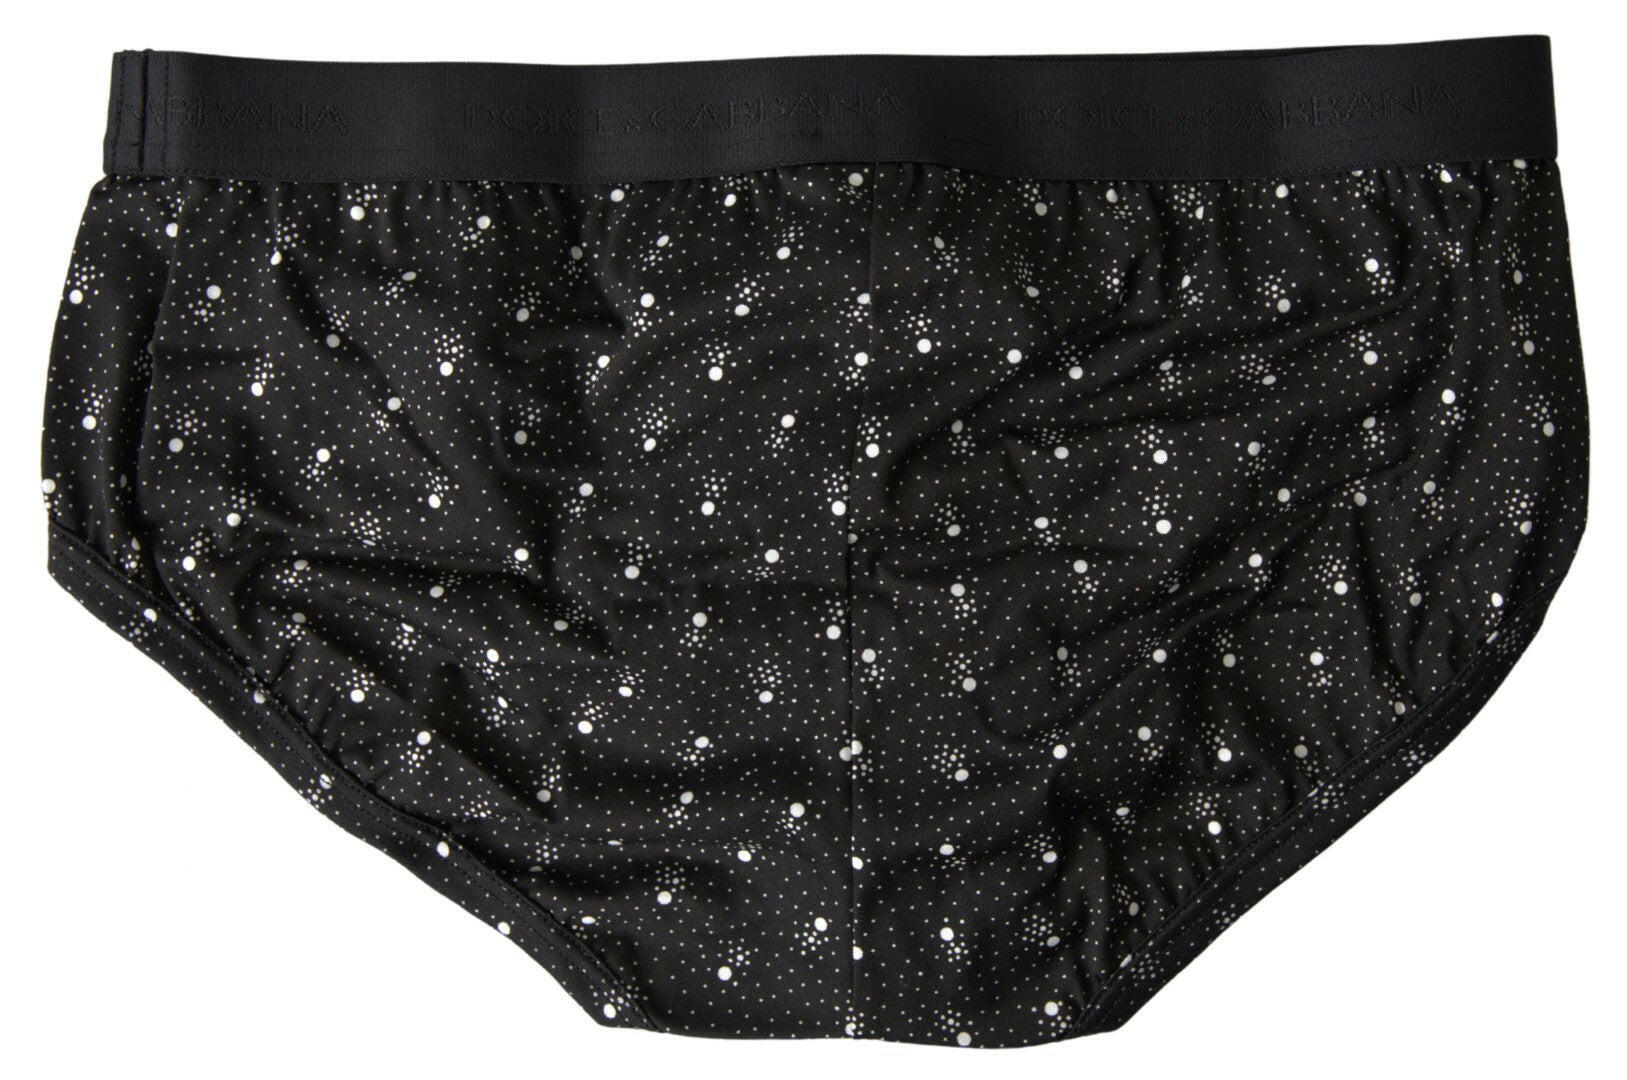 Dolce & Gabbana Black Dotted Cotton Brandon Briefs Underwear - GENUINE AUTHENTIC BRAND LLC  